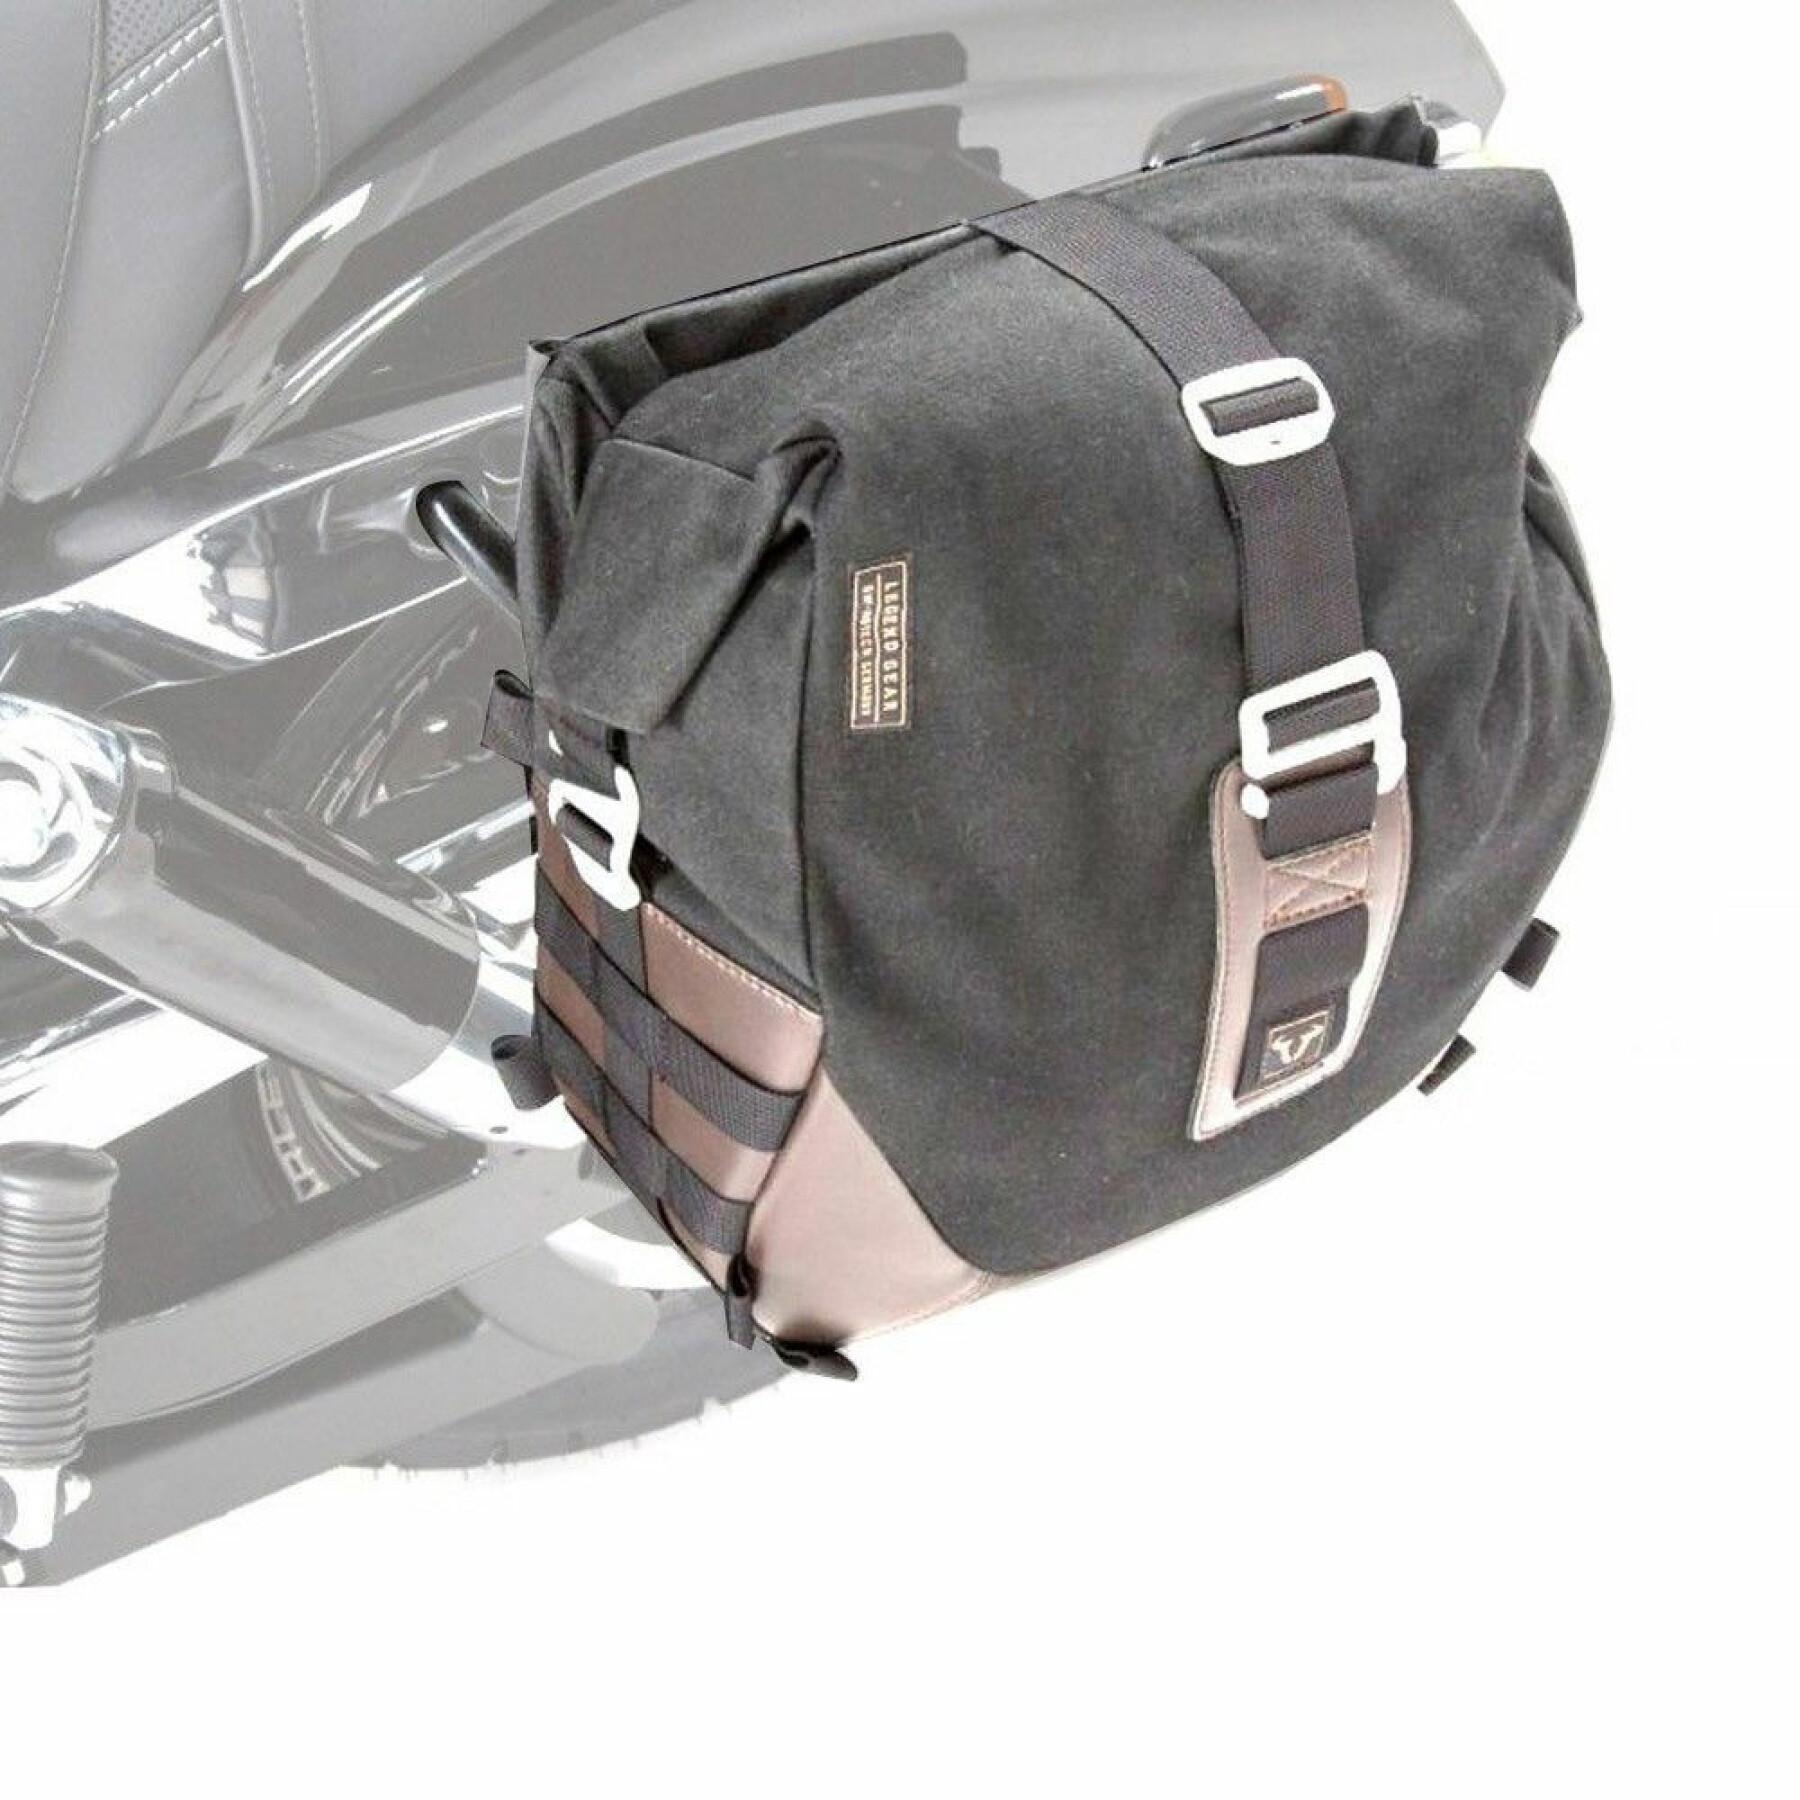 Side bag assembly for left strap SW-Motech legend gear LS1 (9,8 l) incl. SLS